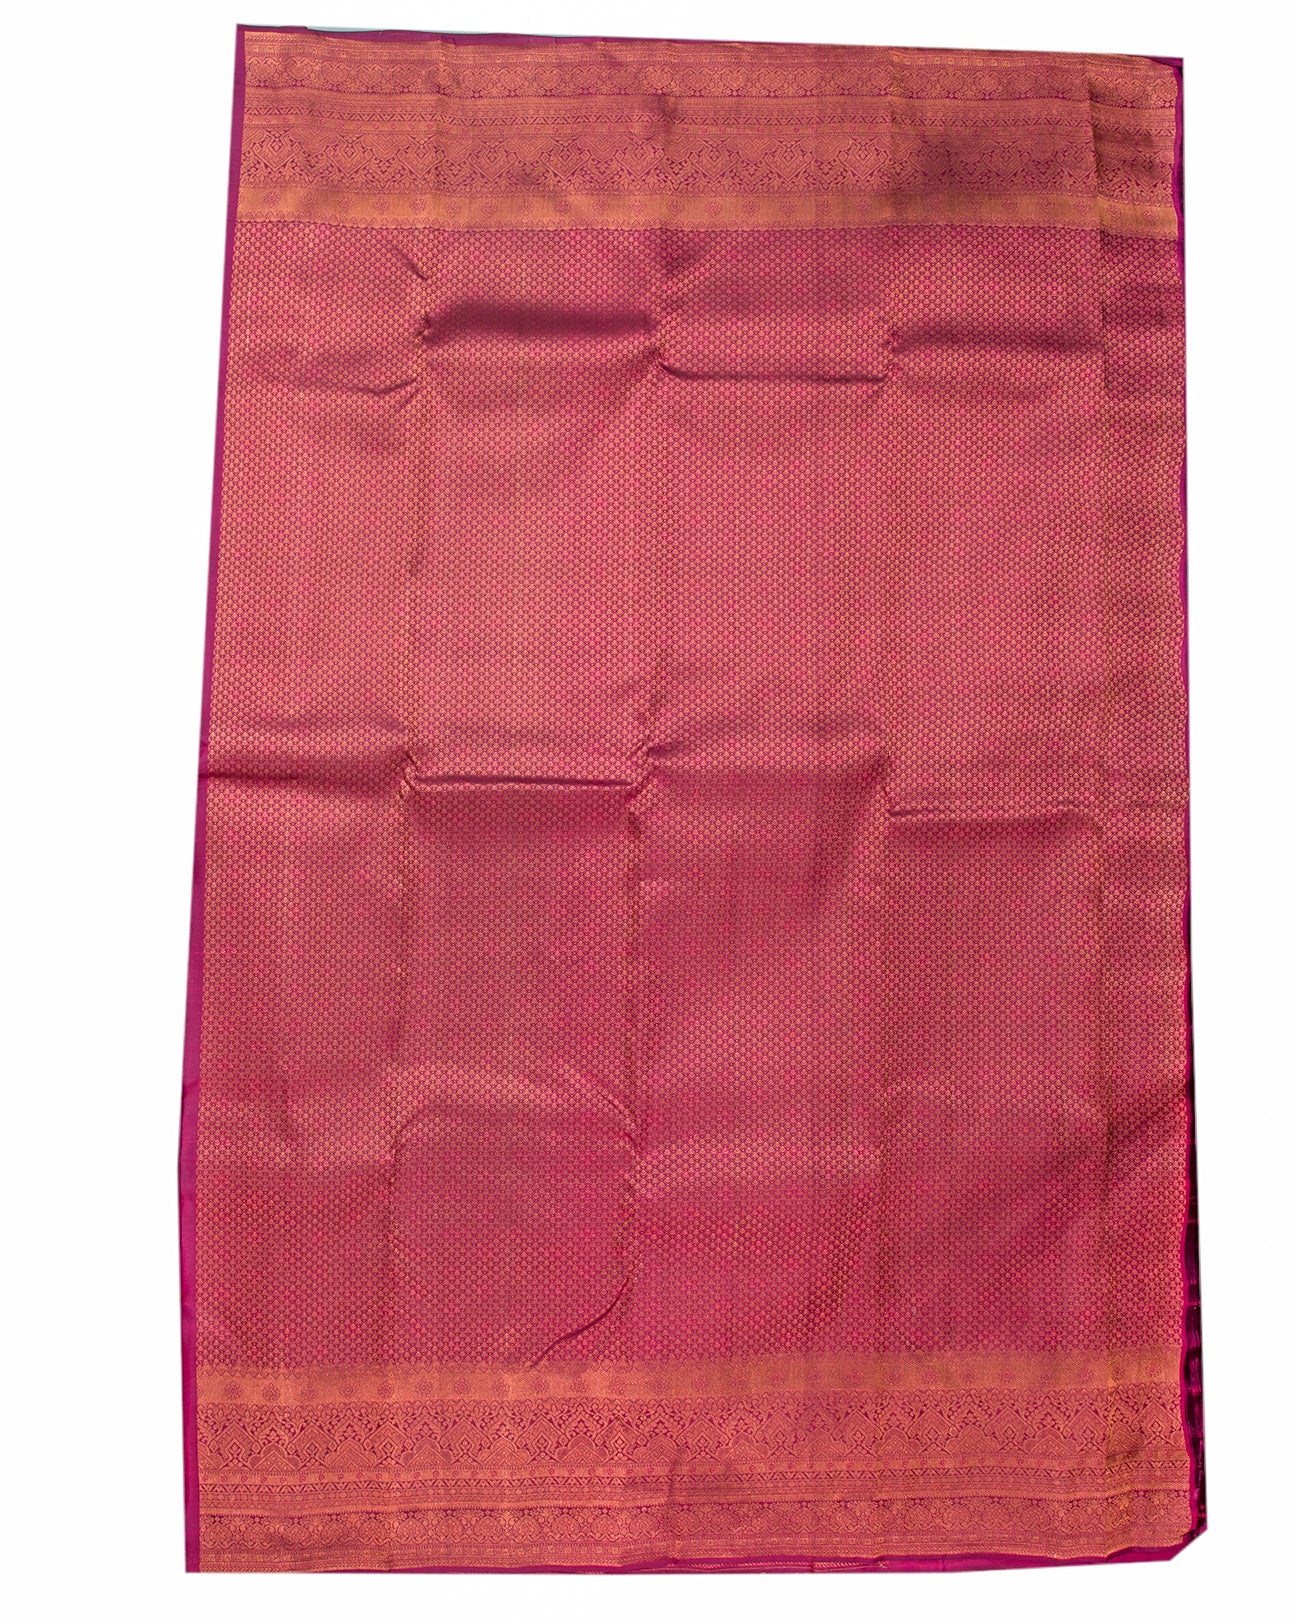 Mulberry Wine Kanchipuram Saree - swayamvara silks